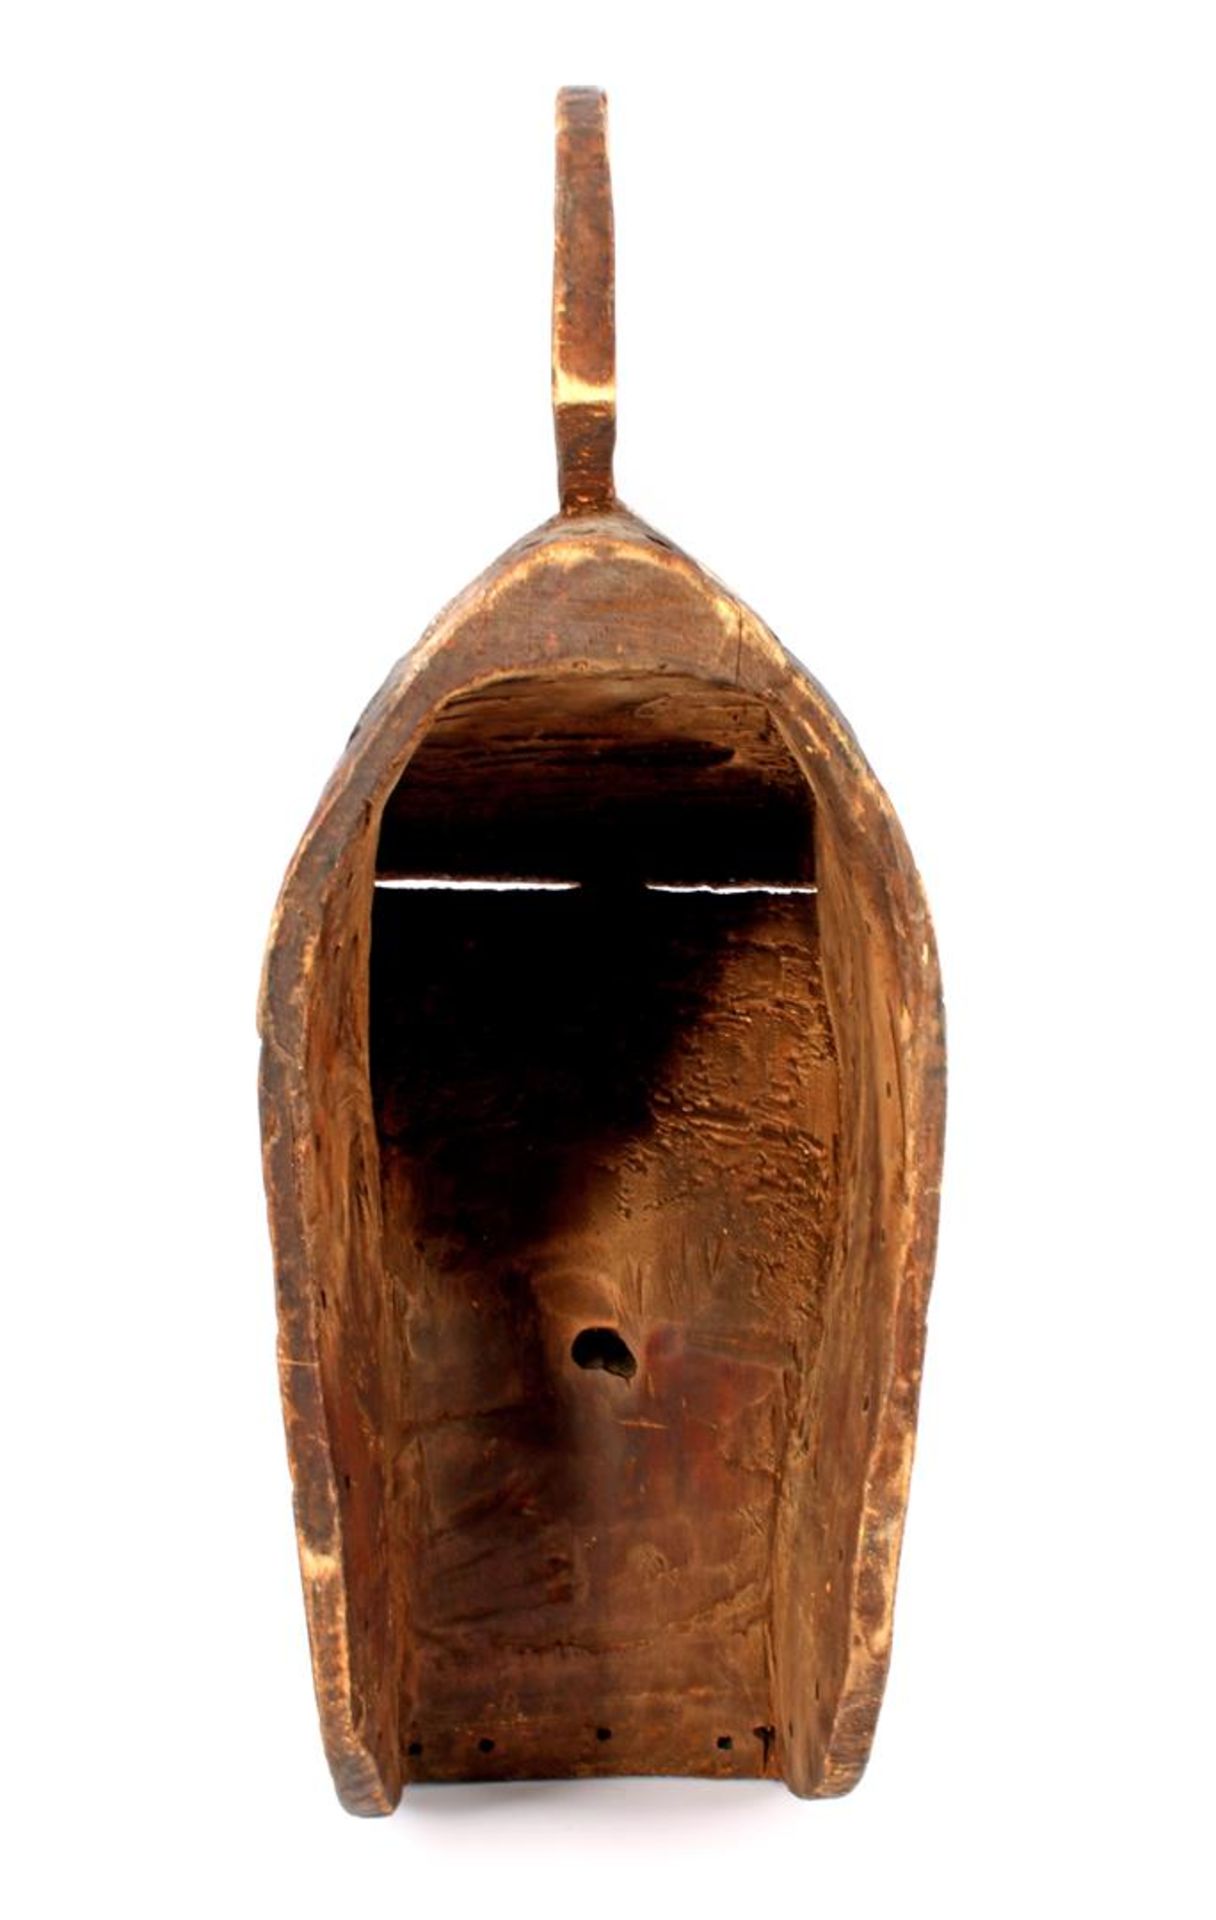 Houten Kifwebe masker Songye Congo 61,5 cm hoog, 22 cm breed - Bild 3 aus 3